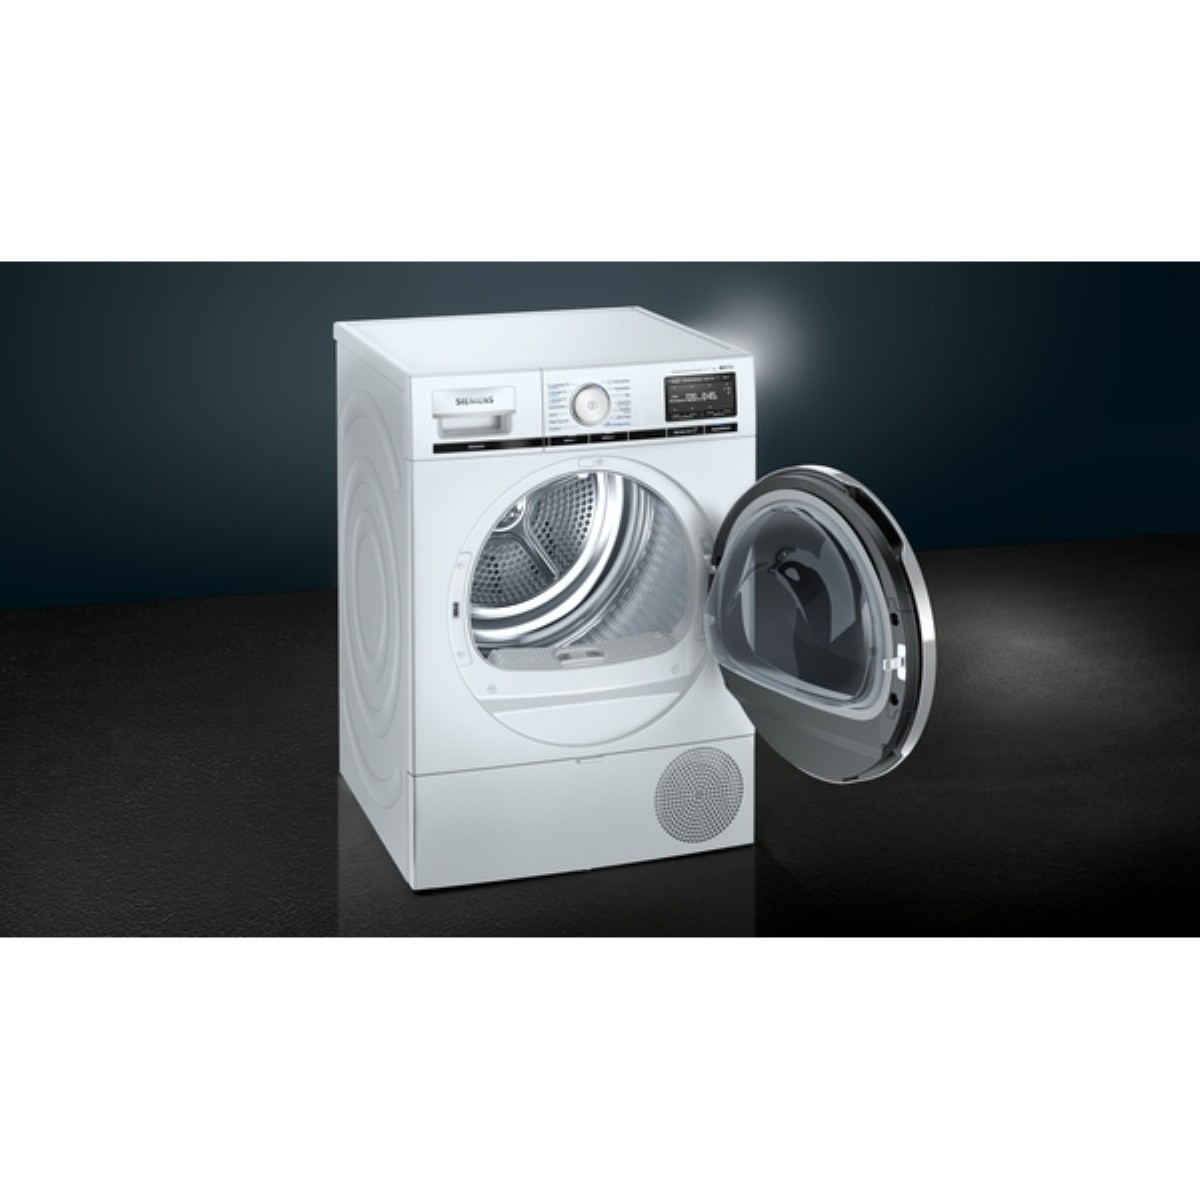 Çamaşır Kurutma Makineleri | Siemens WT47XEH0TR A+++ 9 kg Çamaşır Kurutma Makinesi (Home Connect) | WT47XEH0TR | WT47XEH0TR, wt47xeh0tr, Siemens WT47XEH0TR A+++ 9 kg Çamaşır Kurutma Makinesi | 